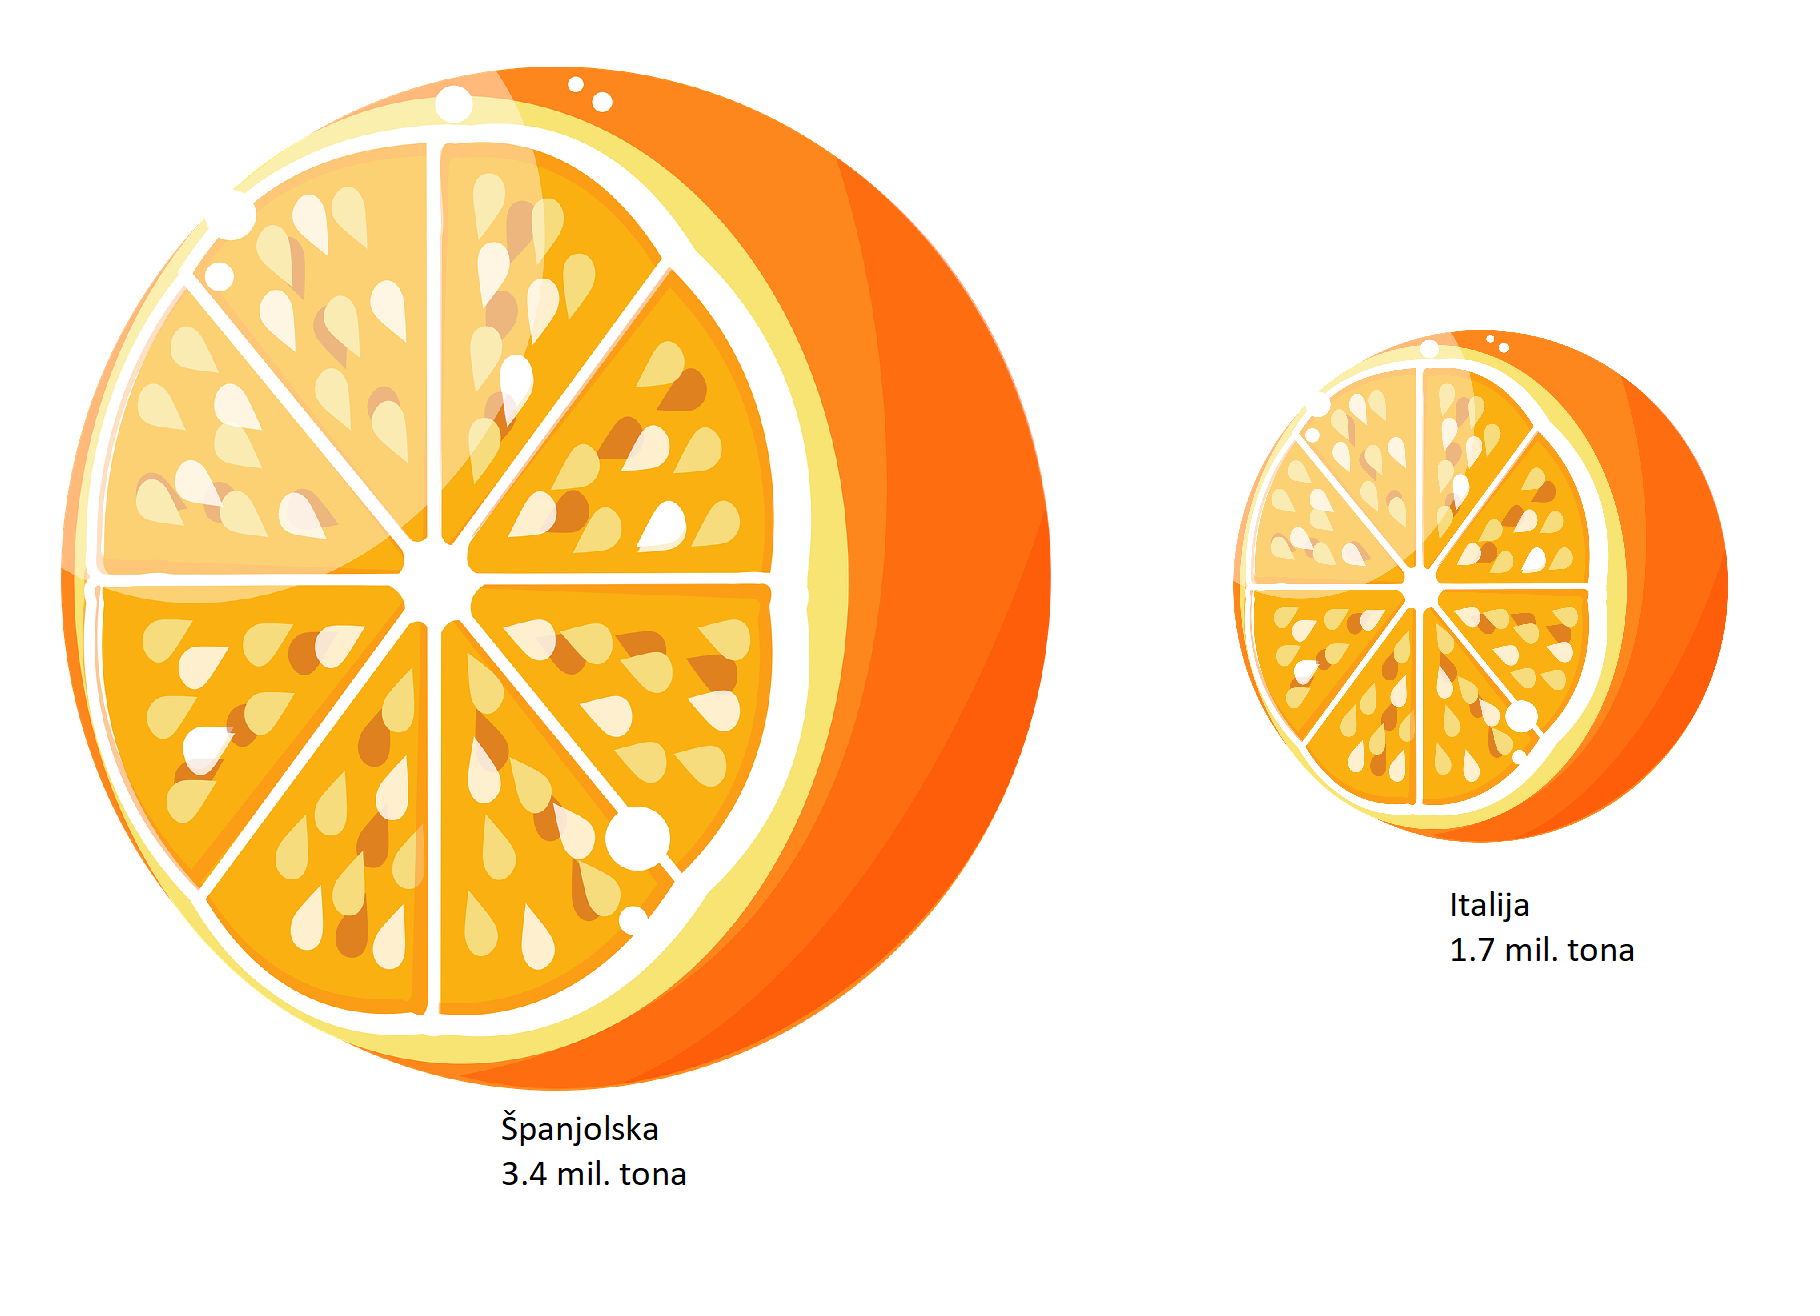 Dvije naranče prezentiraju proizvodnju naranči u Italiji i Španjolskoj.